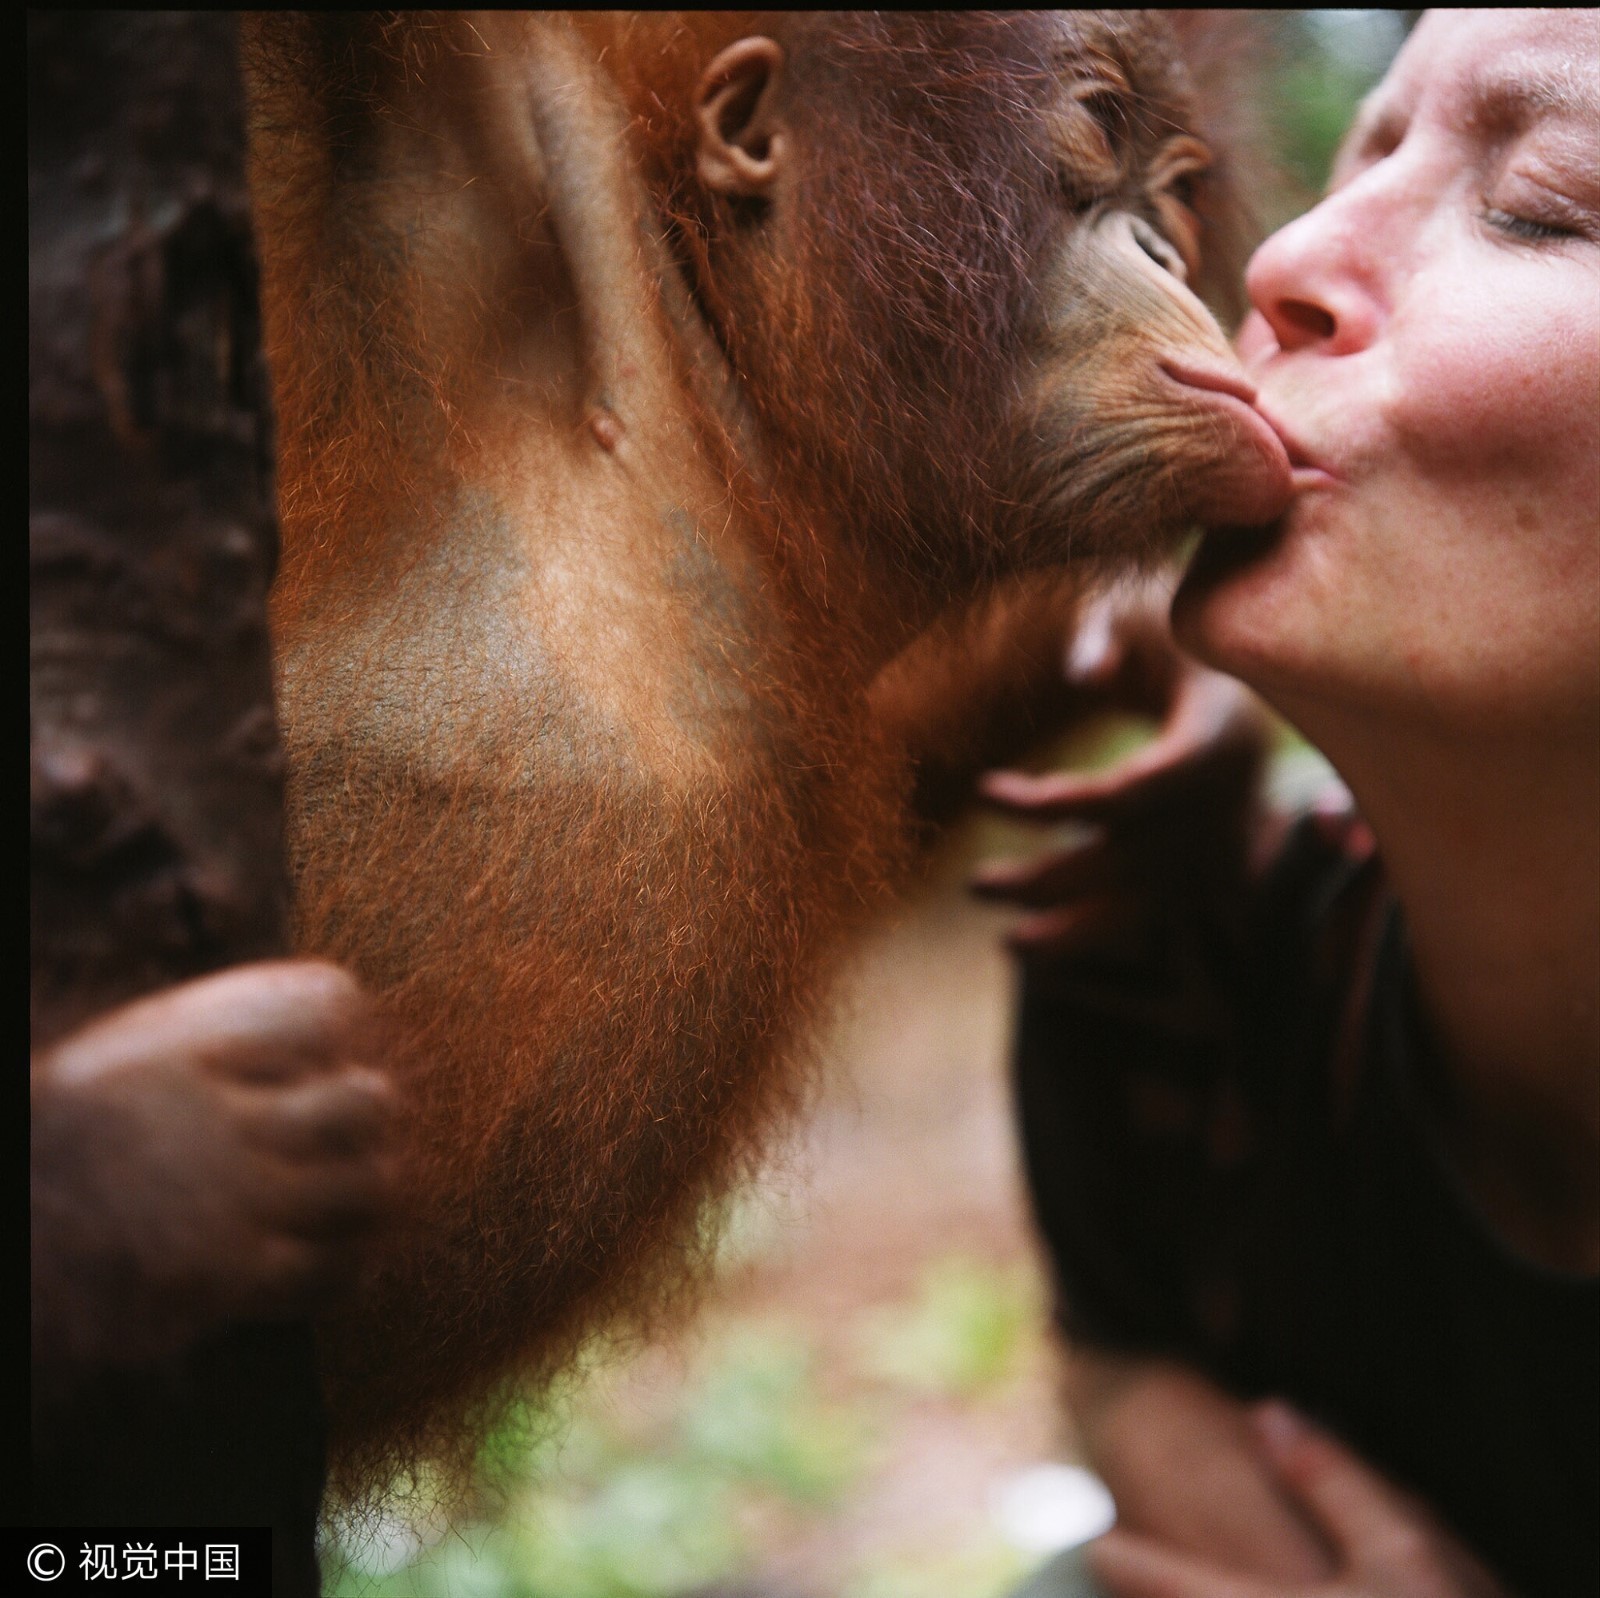 2009年10月2日,婆罗洲的猩猩与救助人员亲吻